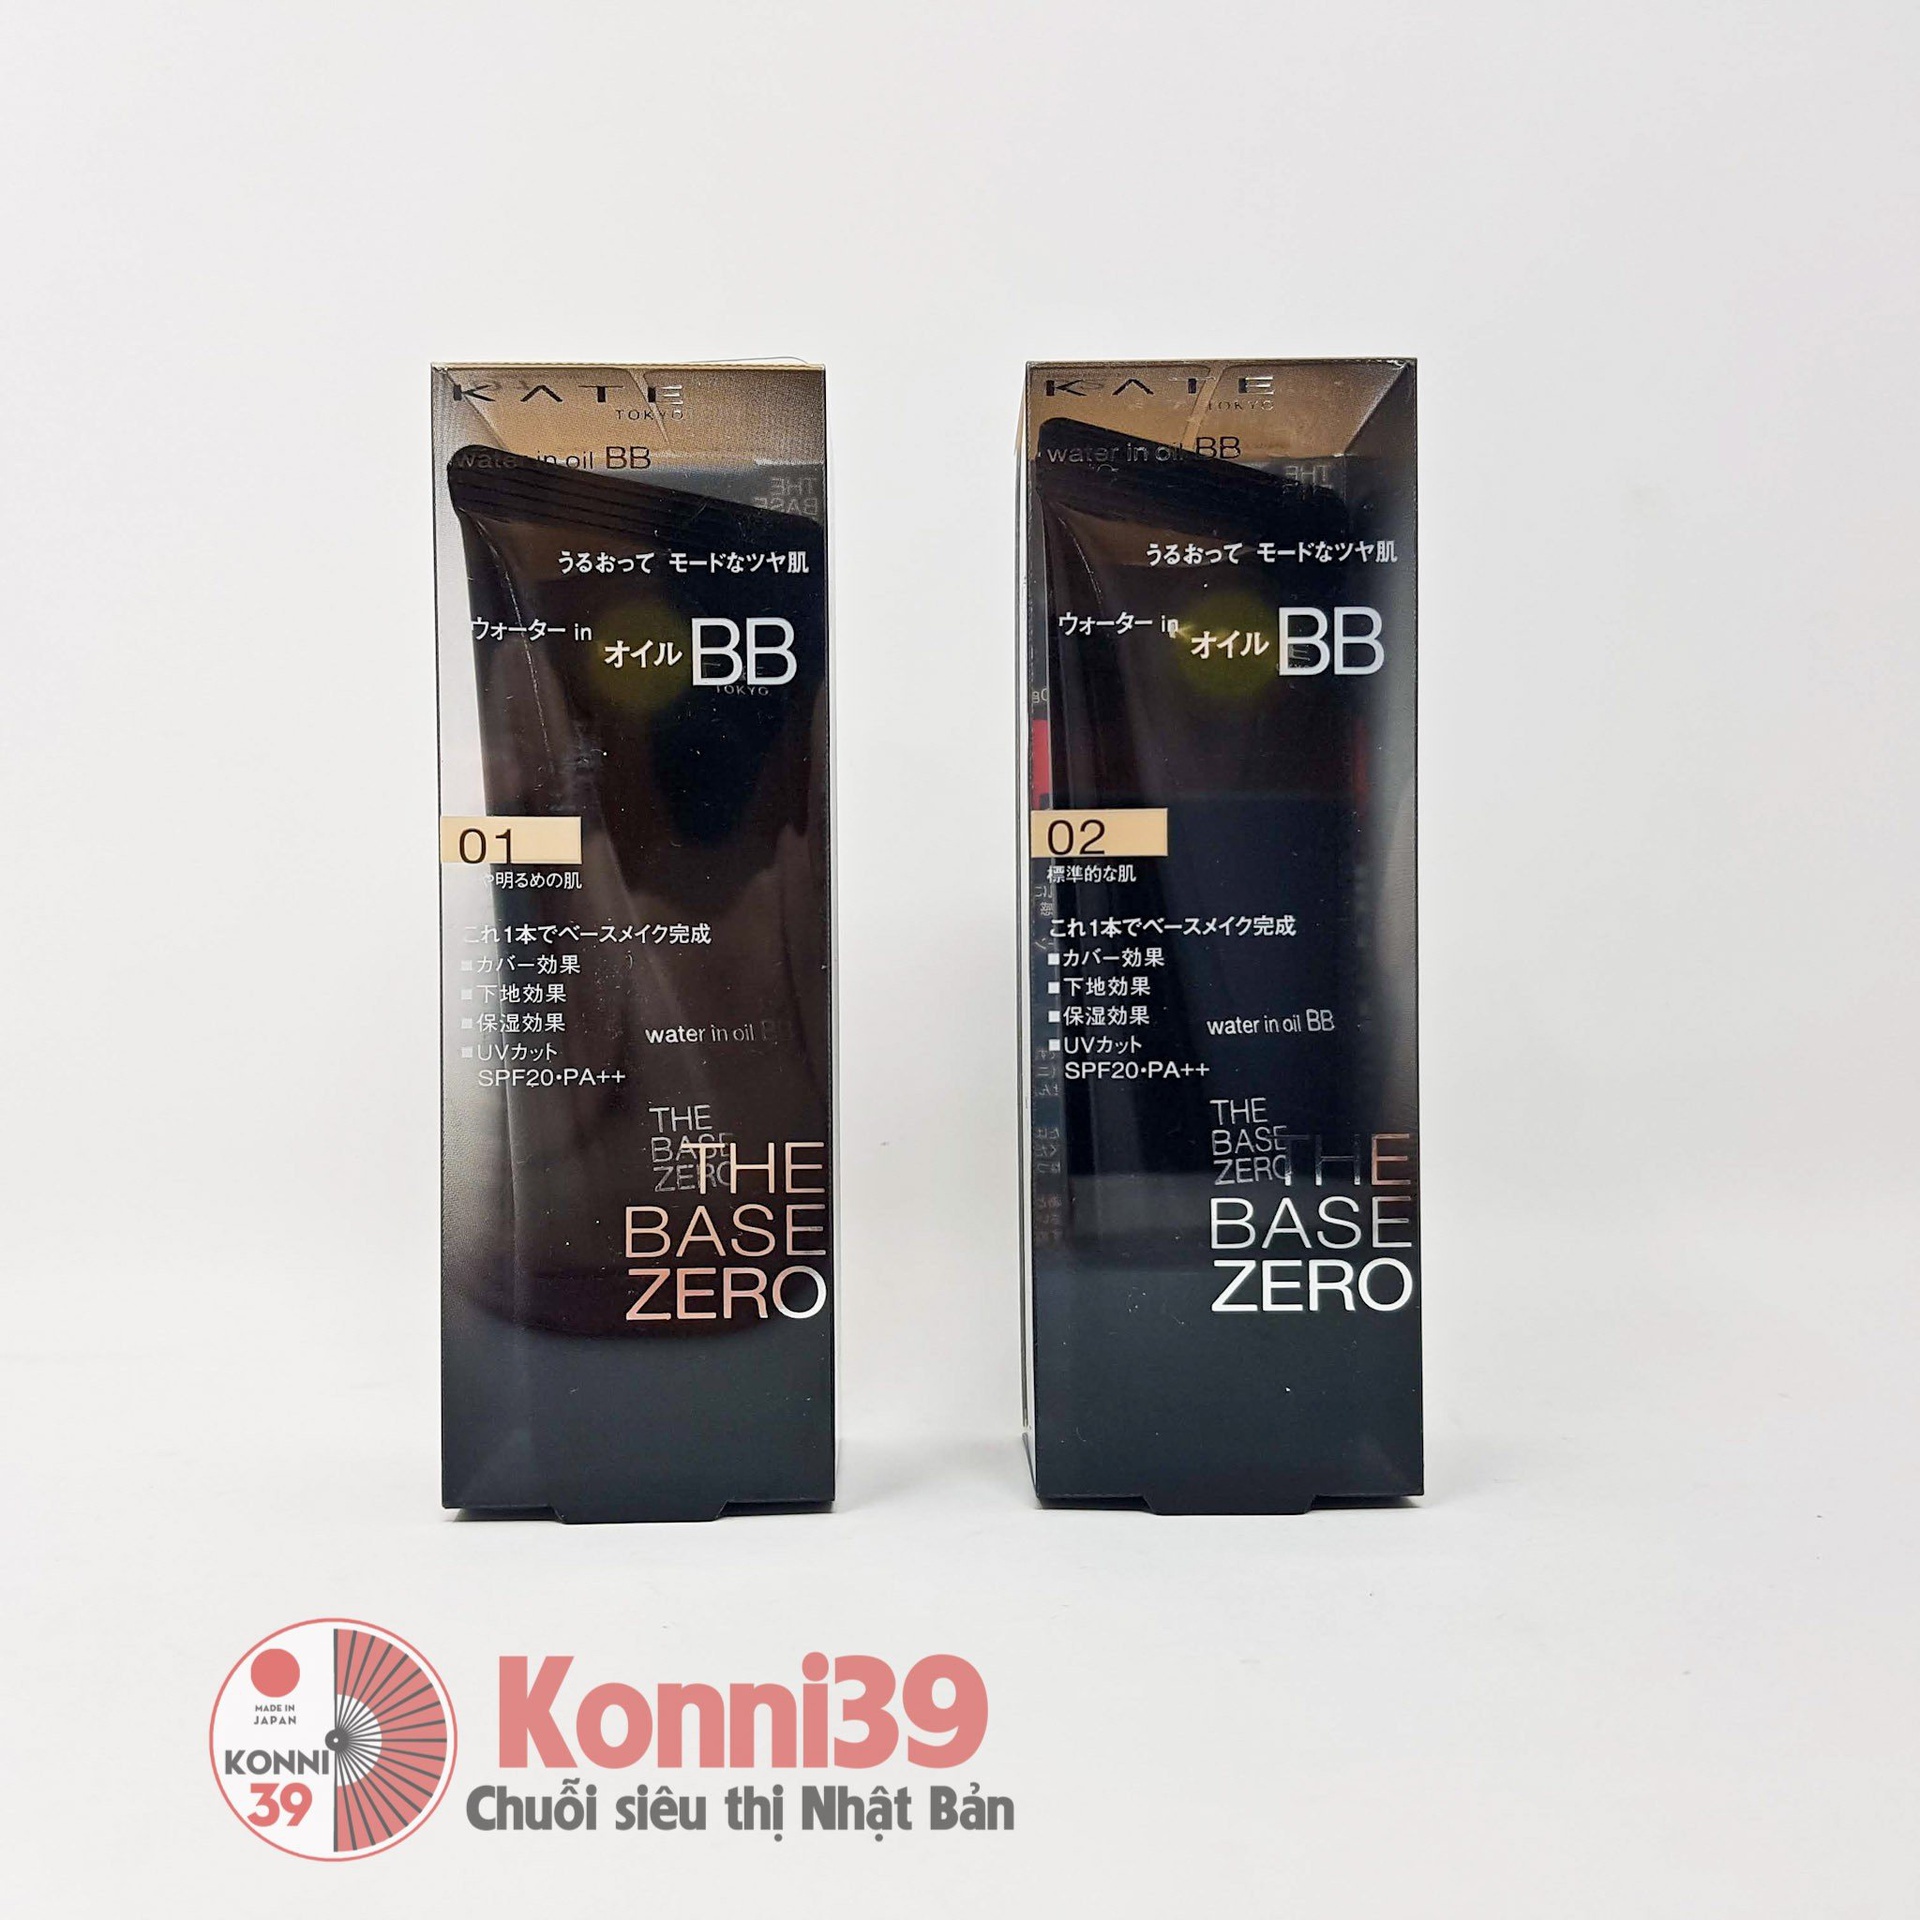 Kem nền Kanebo Kate BB Cream Water in Oil SPF20 PA++ 30g (2 loại)